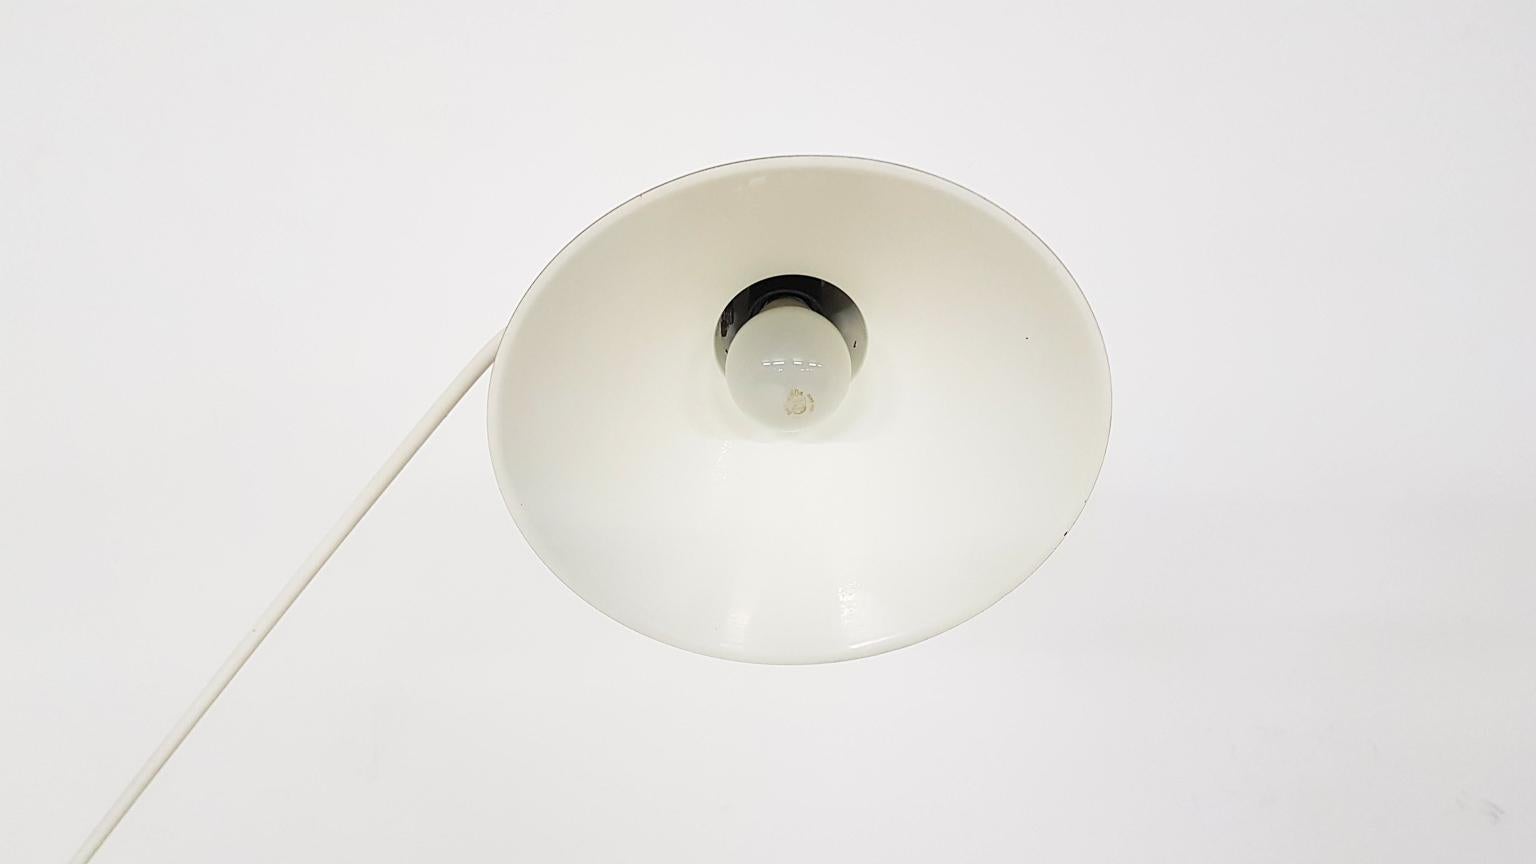 J.J. Hoogervorst for Anvia Almelo Metal Floor Lamp, Dutch Modern Design, 1950s For Sale 3